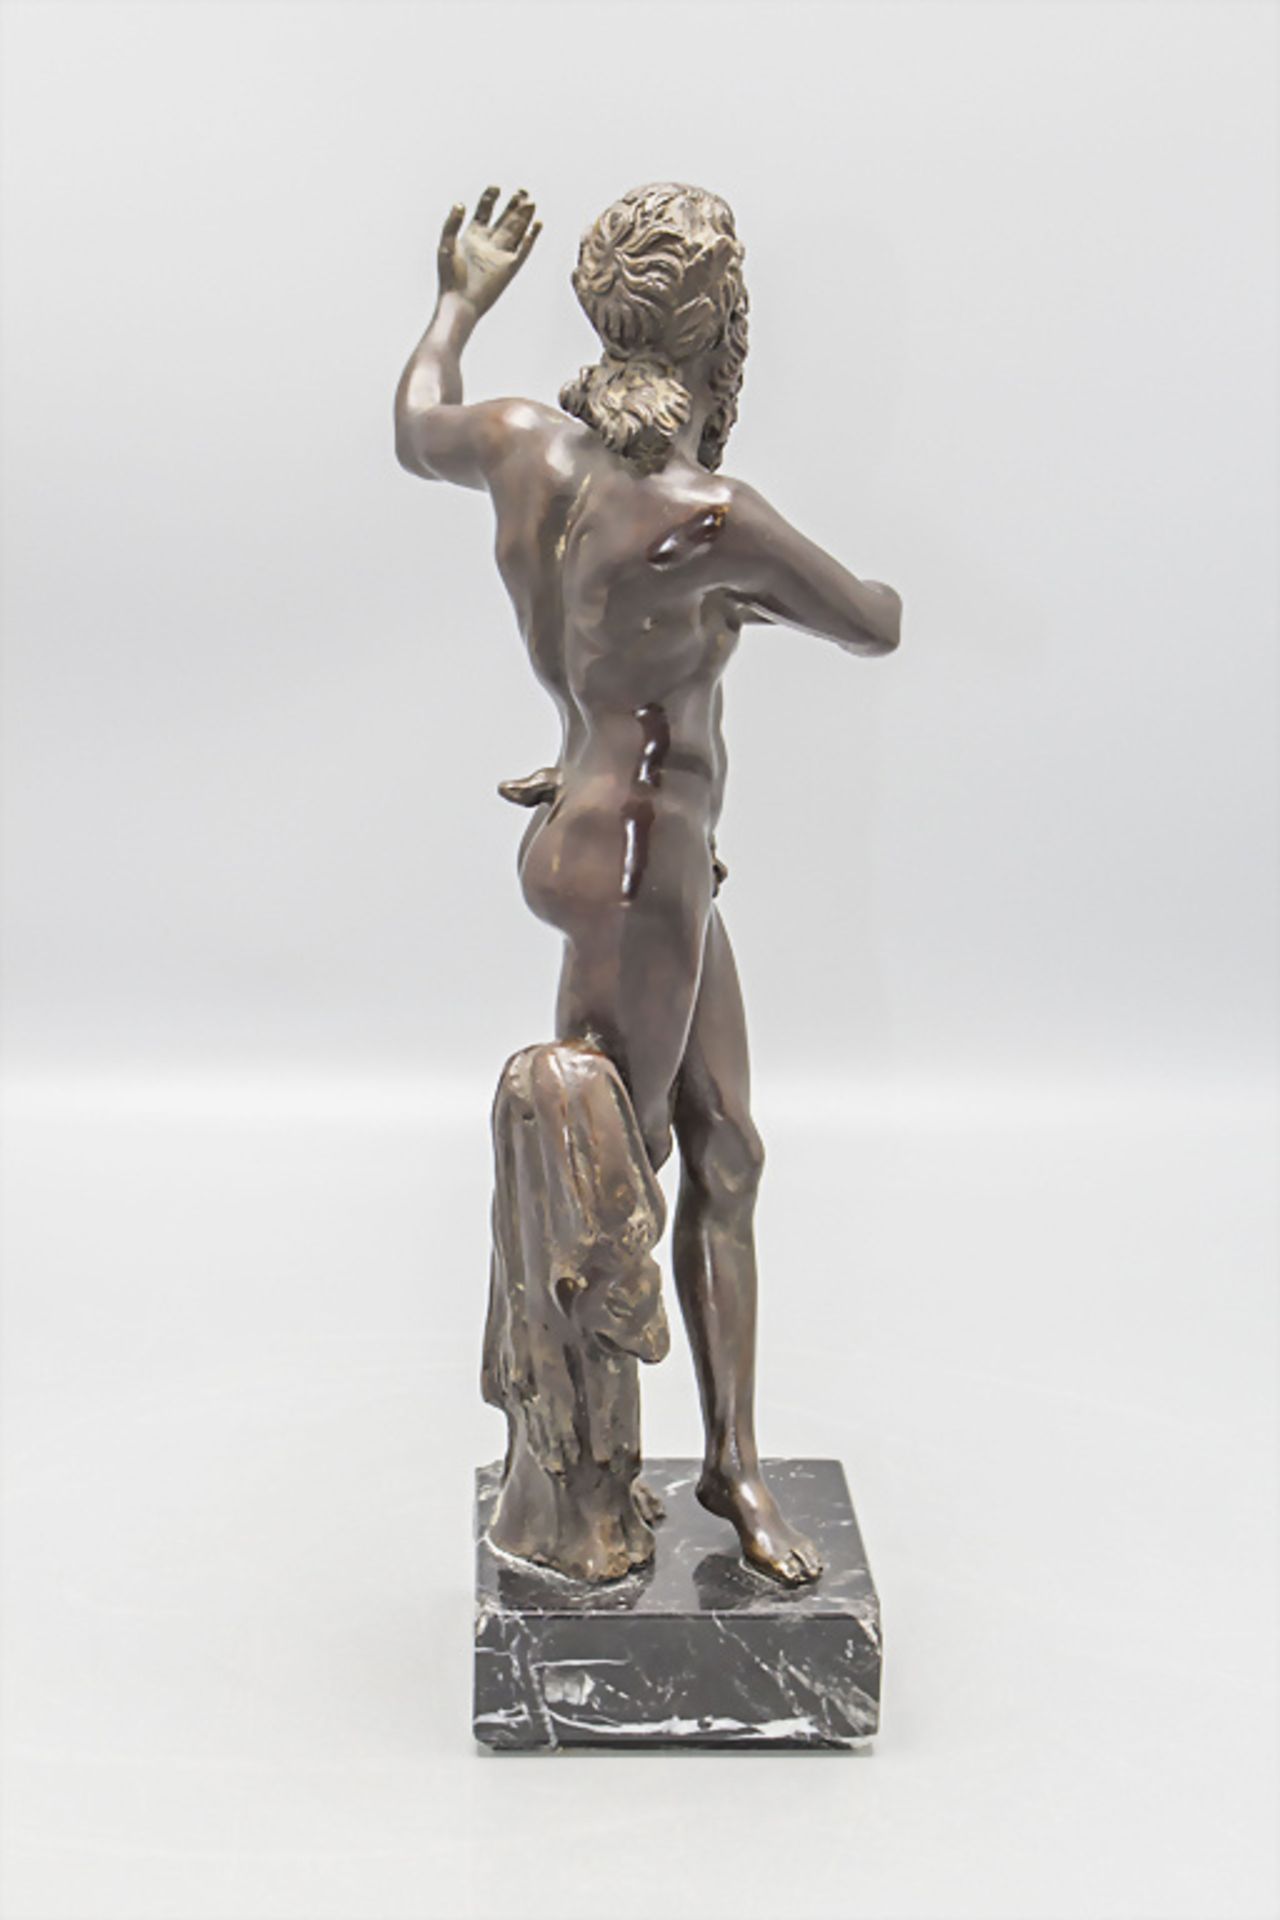 Bronze Skulptur 'Tanzender Faun' / A bronze sculpture of a 'Dancing Faun', Museumreplik der ... - Bild 3 aus 4